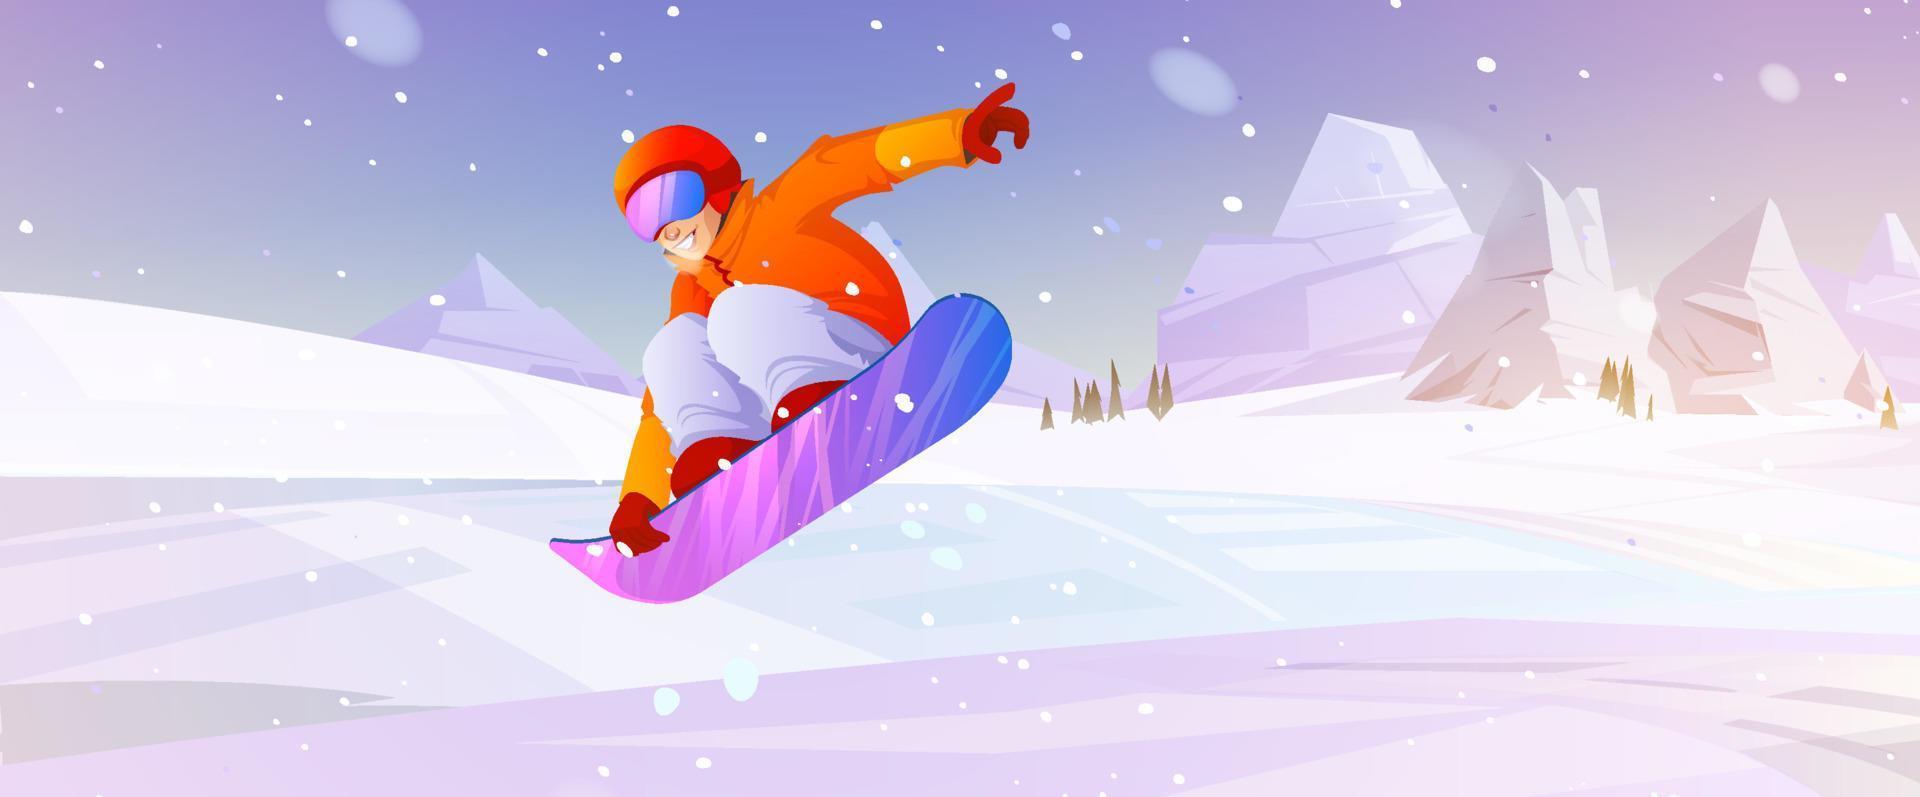 extreem snowboarden winter sport buitenshuis werkzaamheid vector